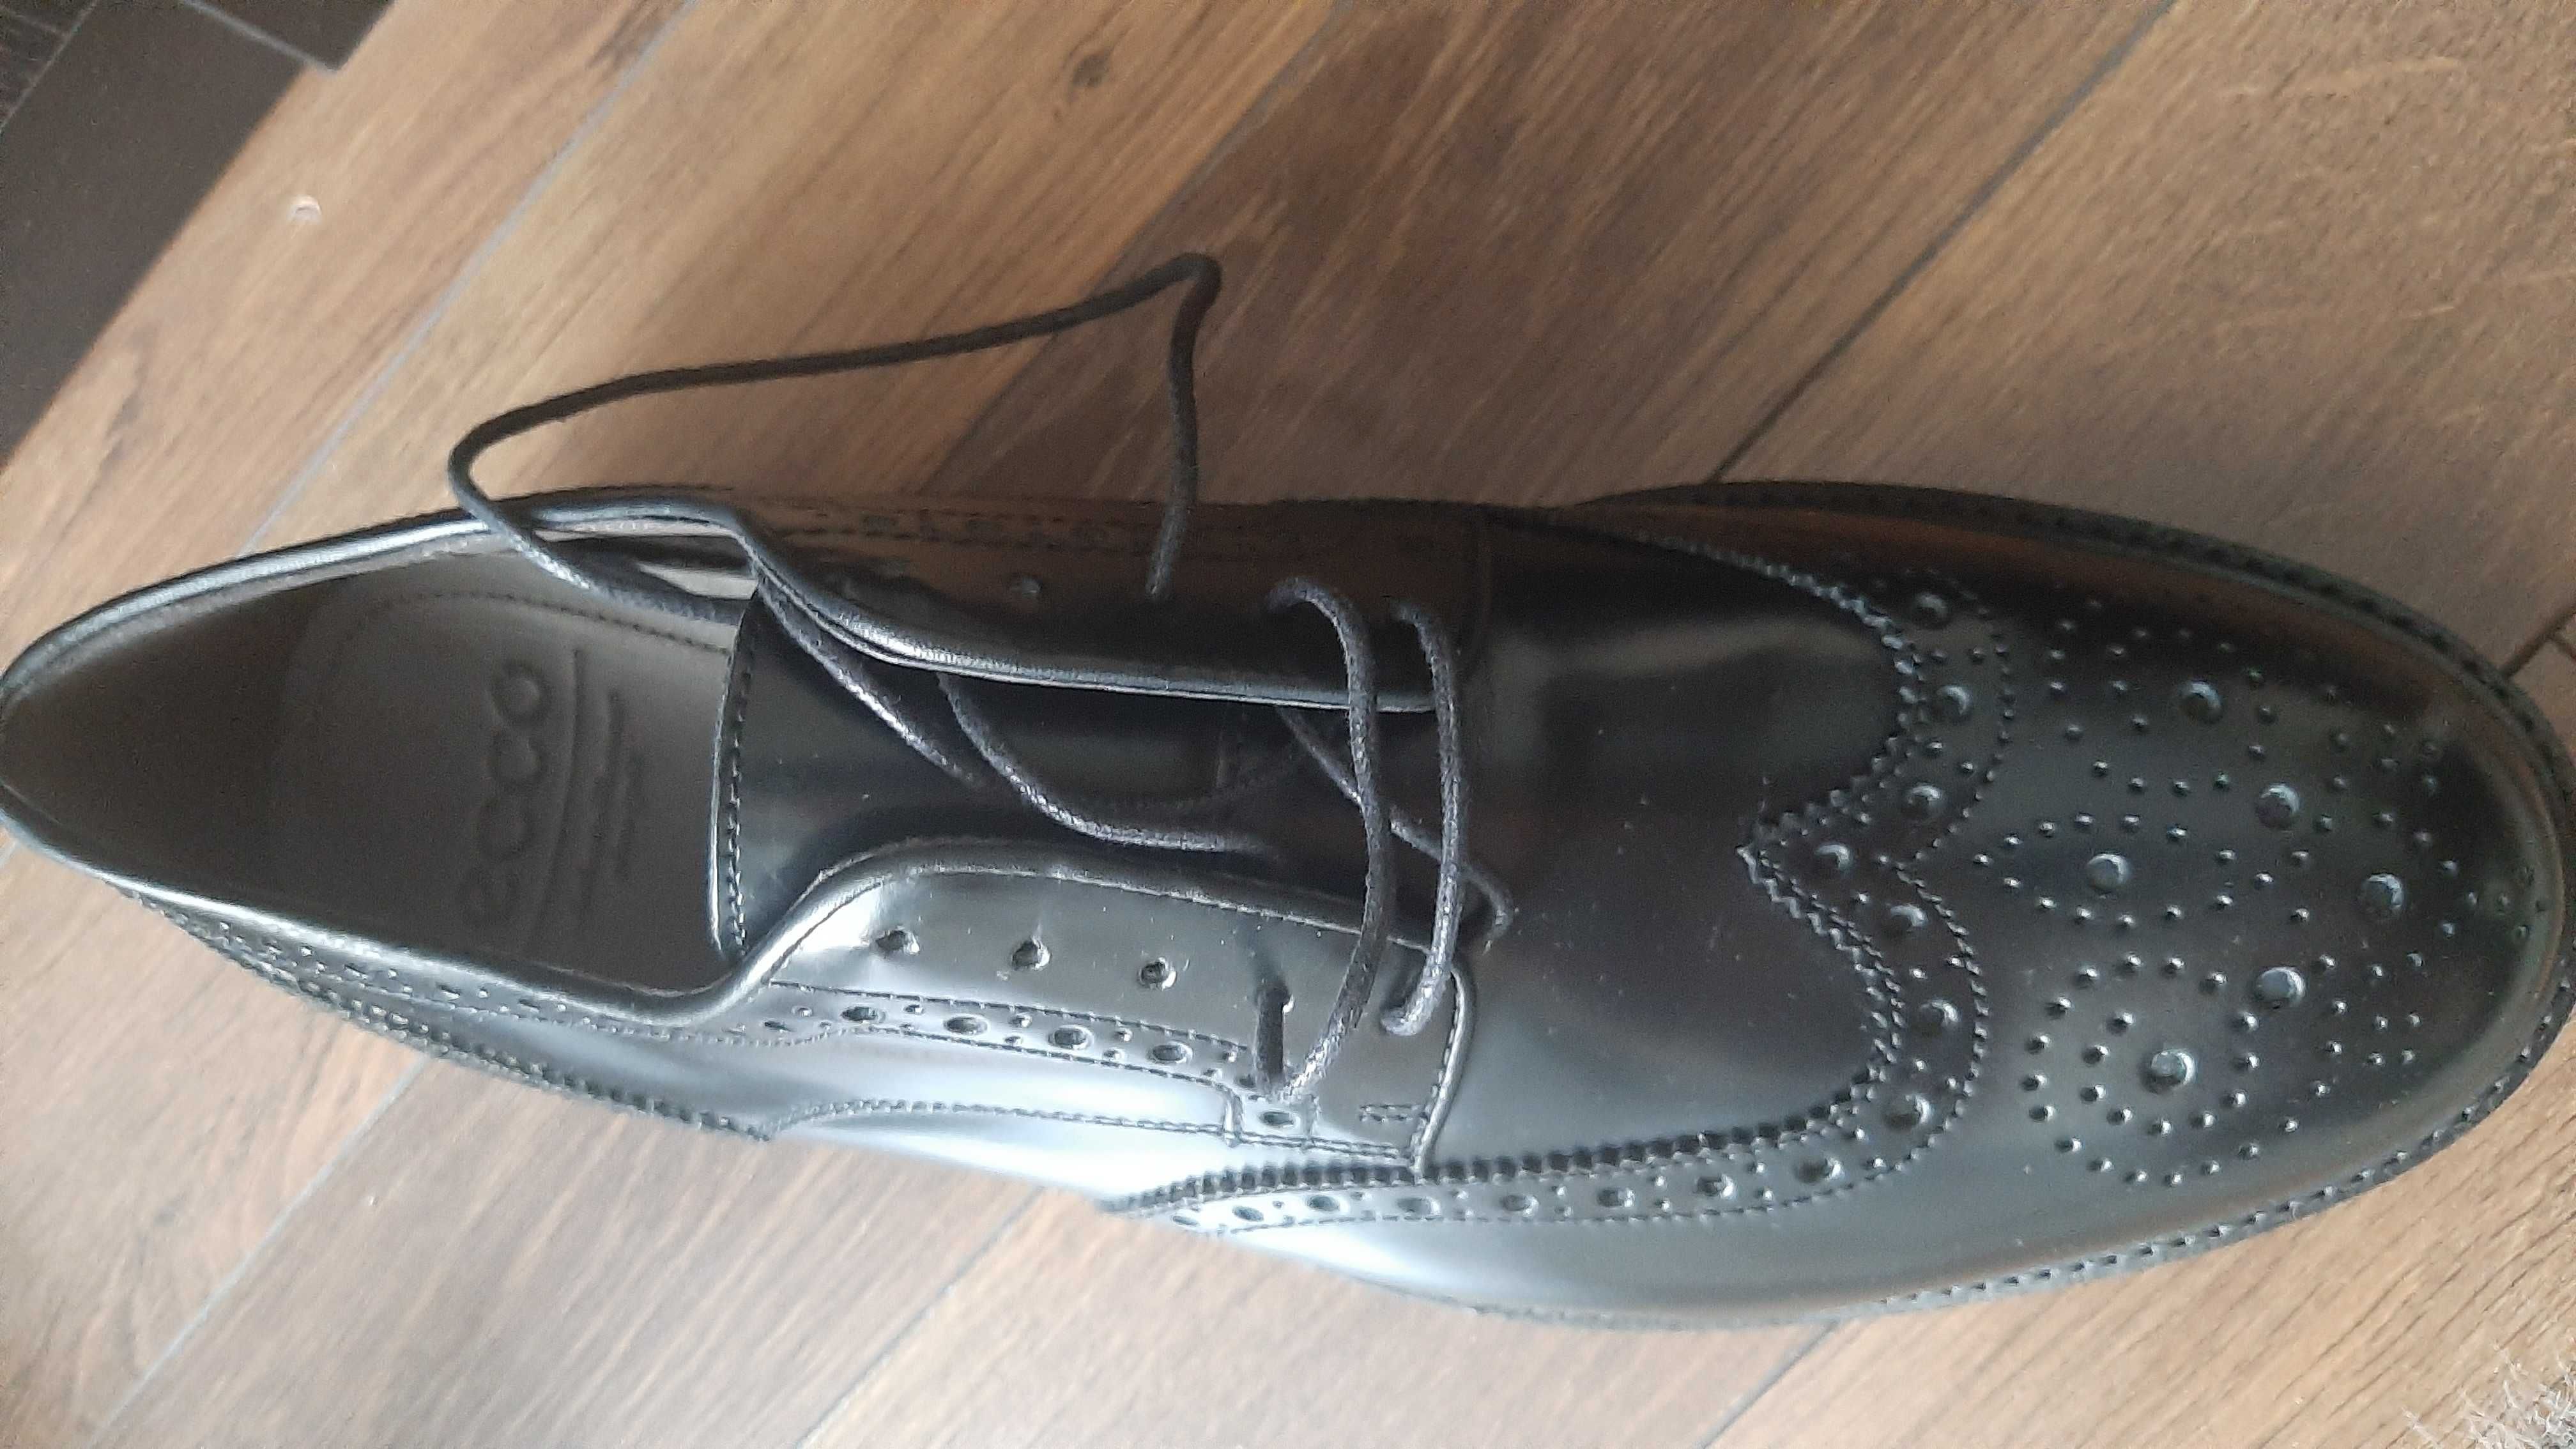 Nowe buty męskie Ecco Hampshire r. 43 czarne eleganckie wygodne